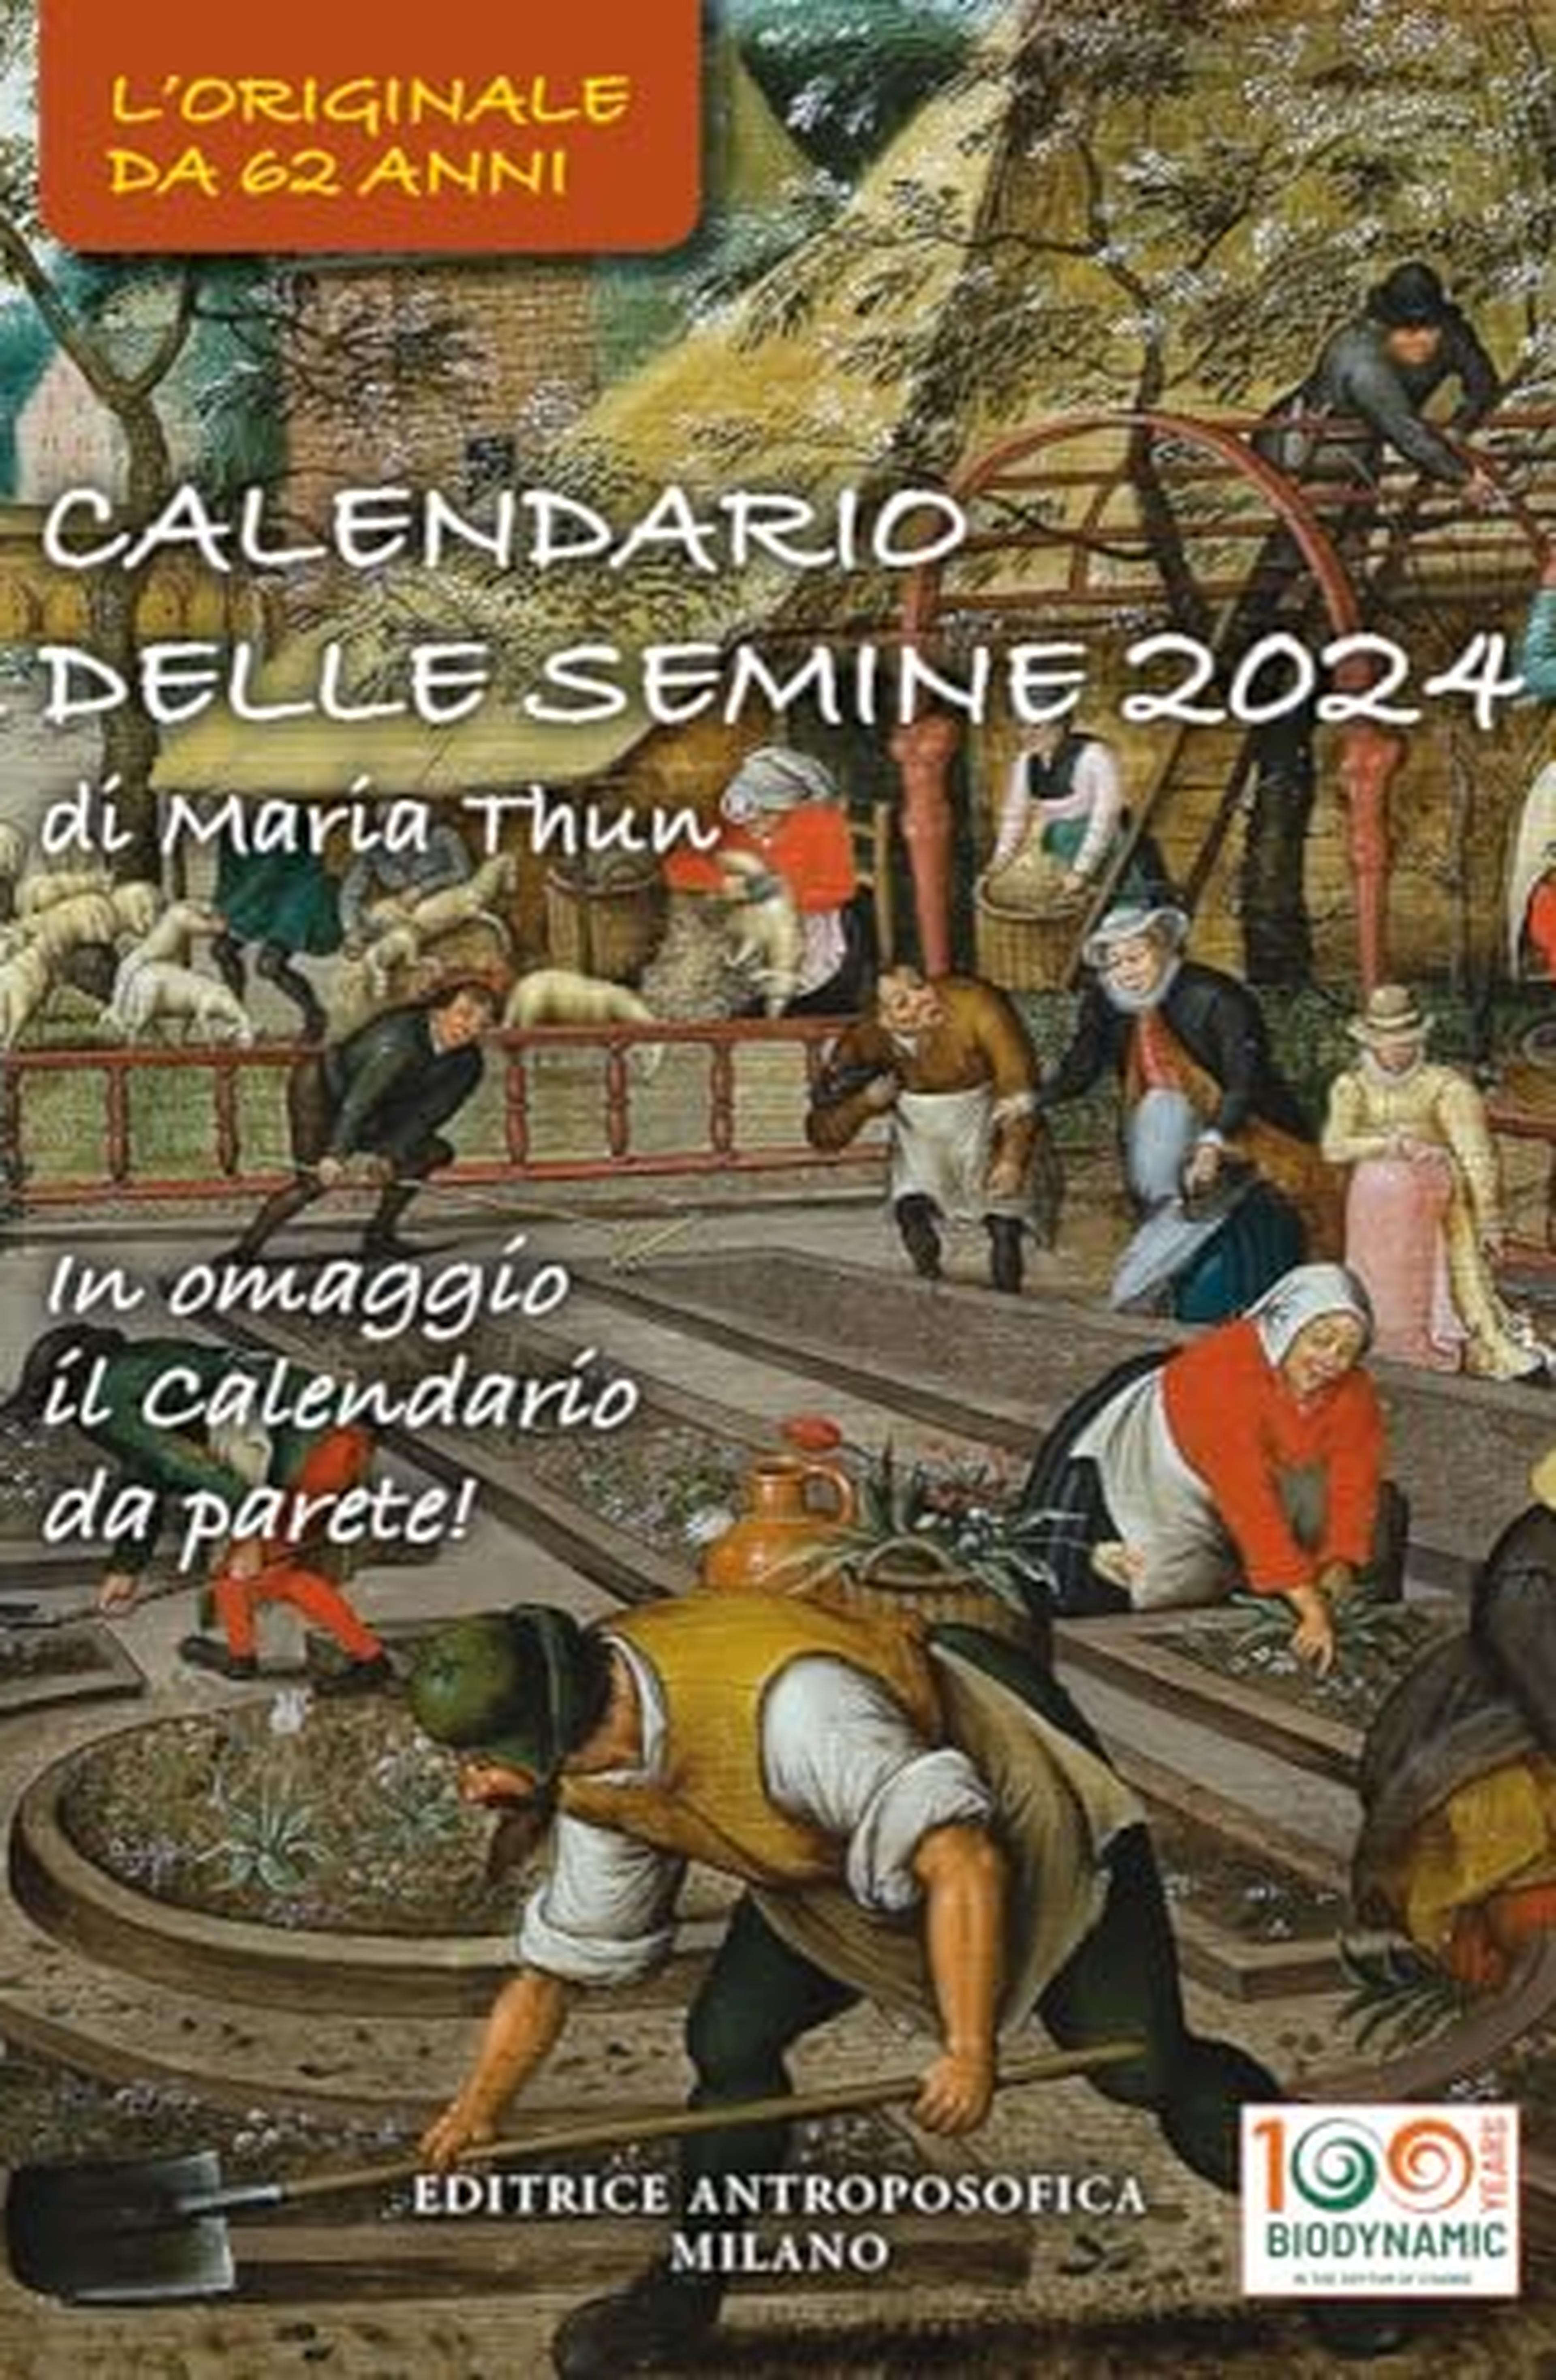 Calendario delle semine 2024. L'originale Calendario delle semine biodinamico